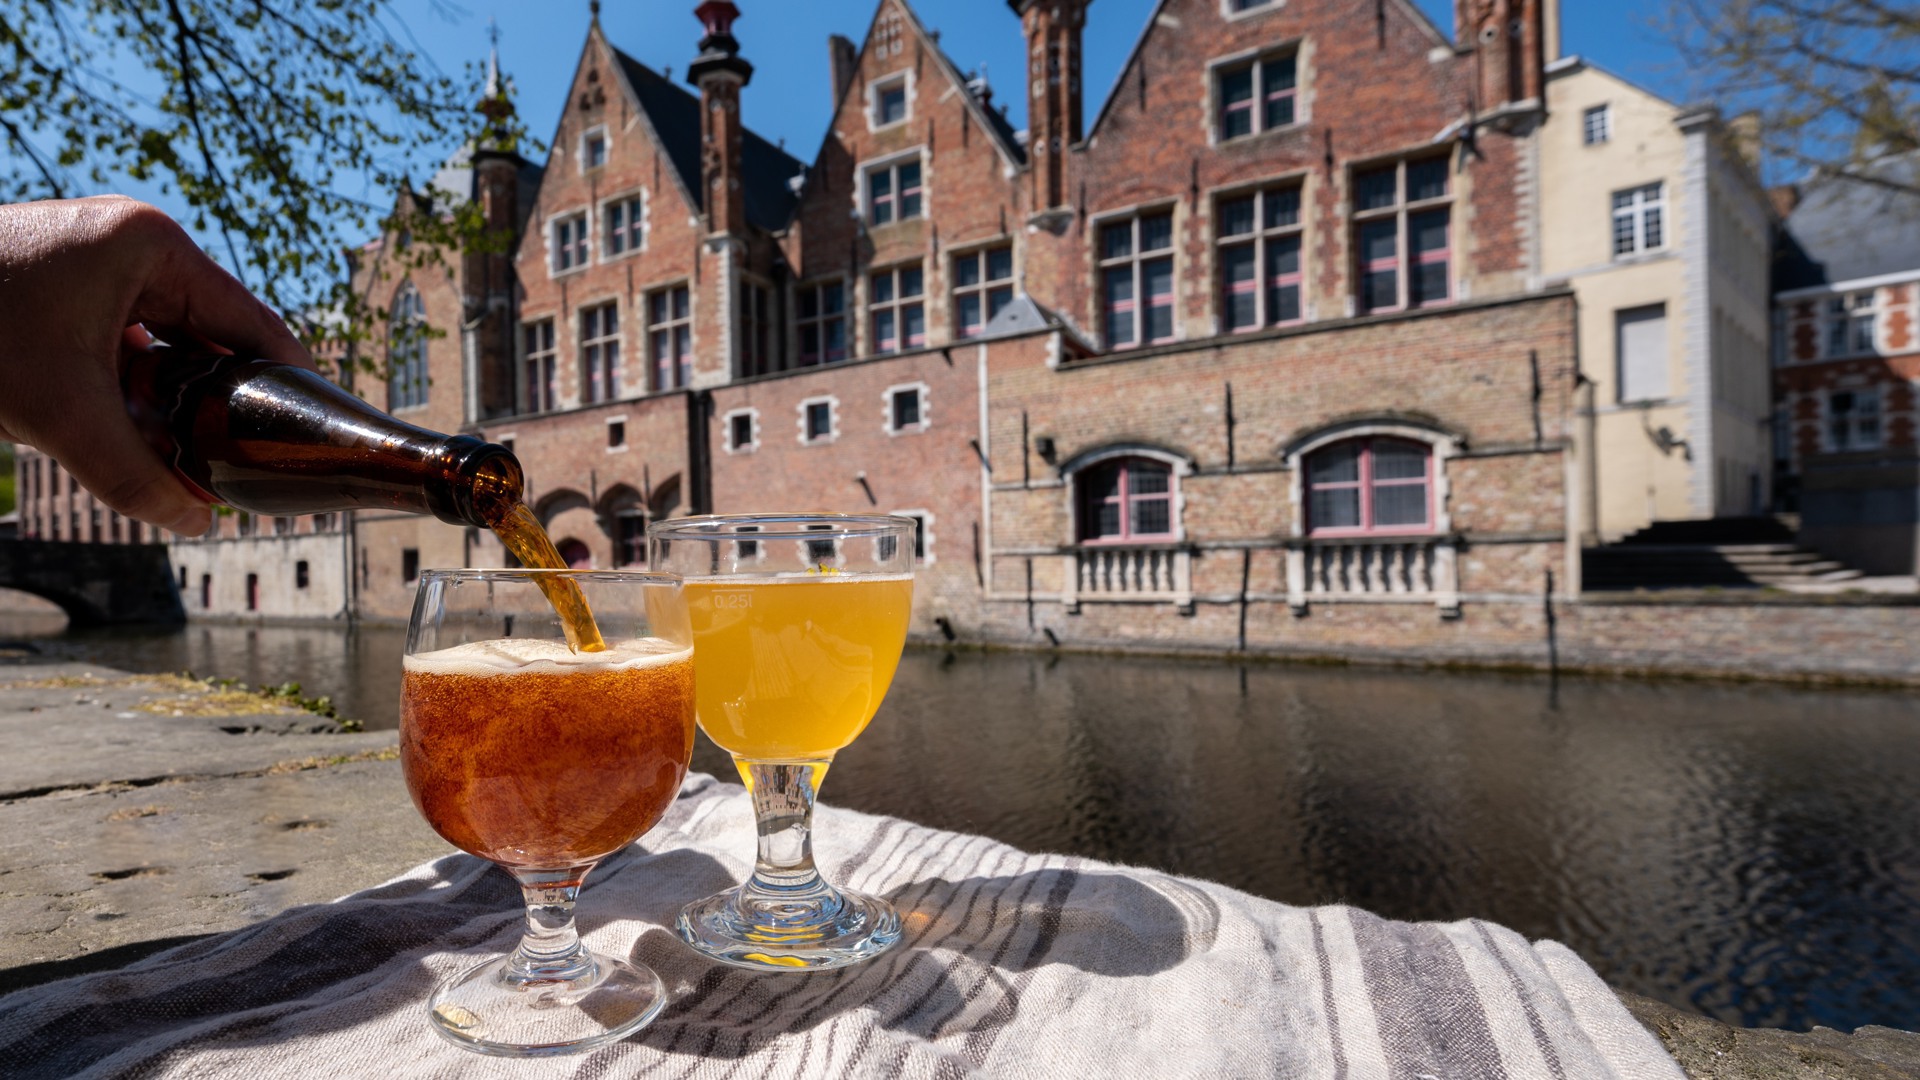 Tip: Sample Belgian beers in Bruges